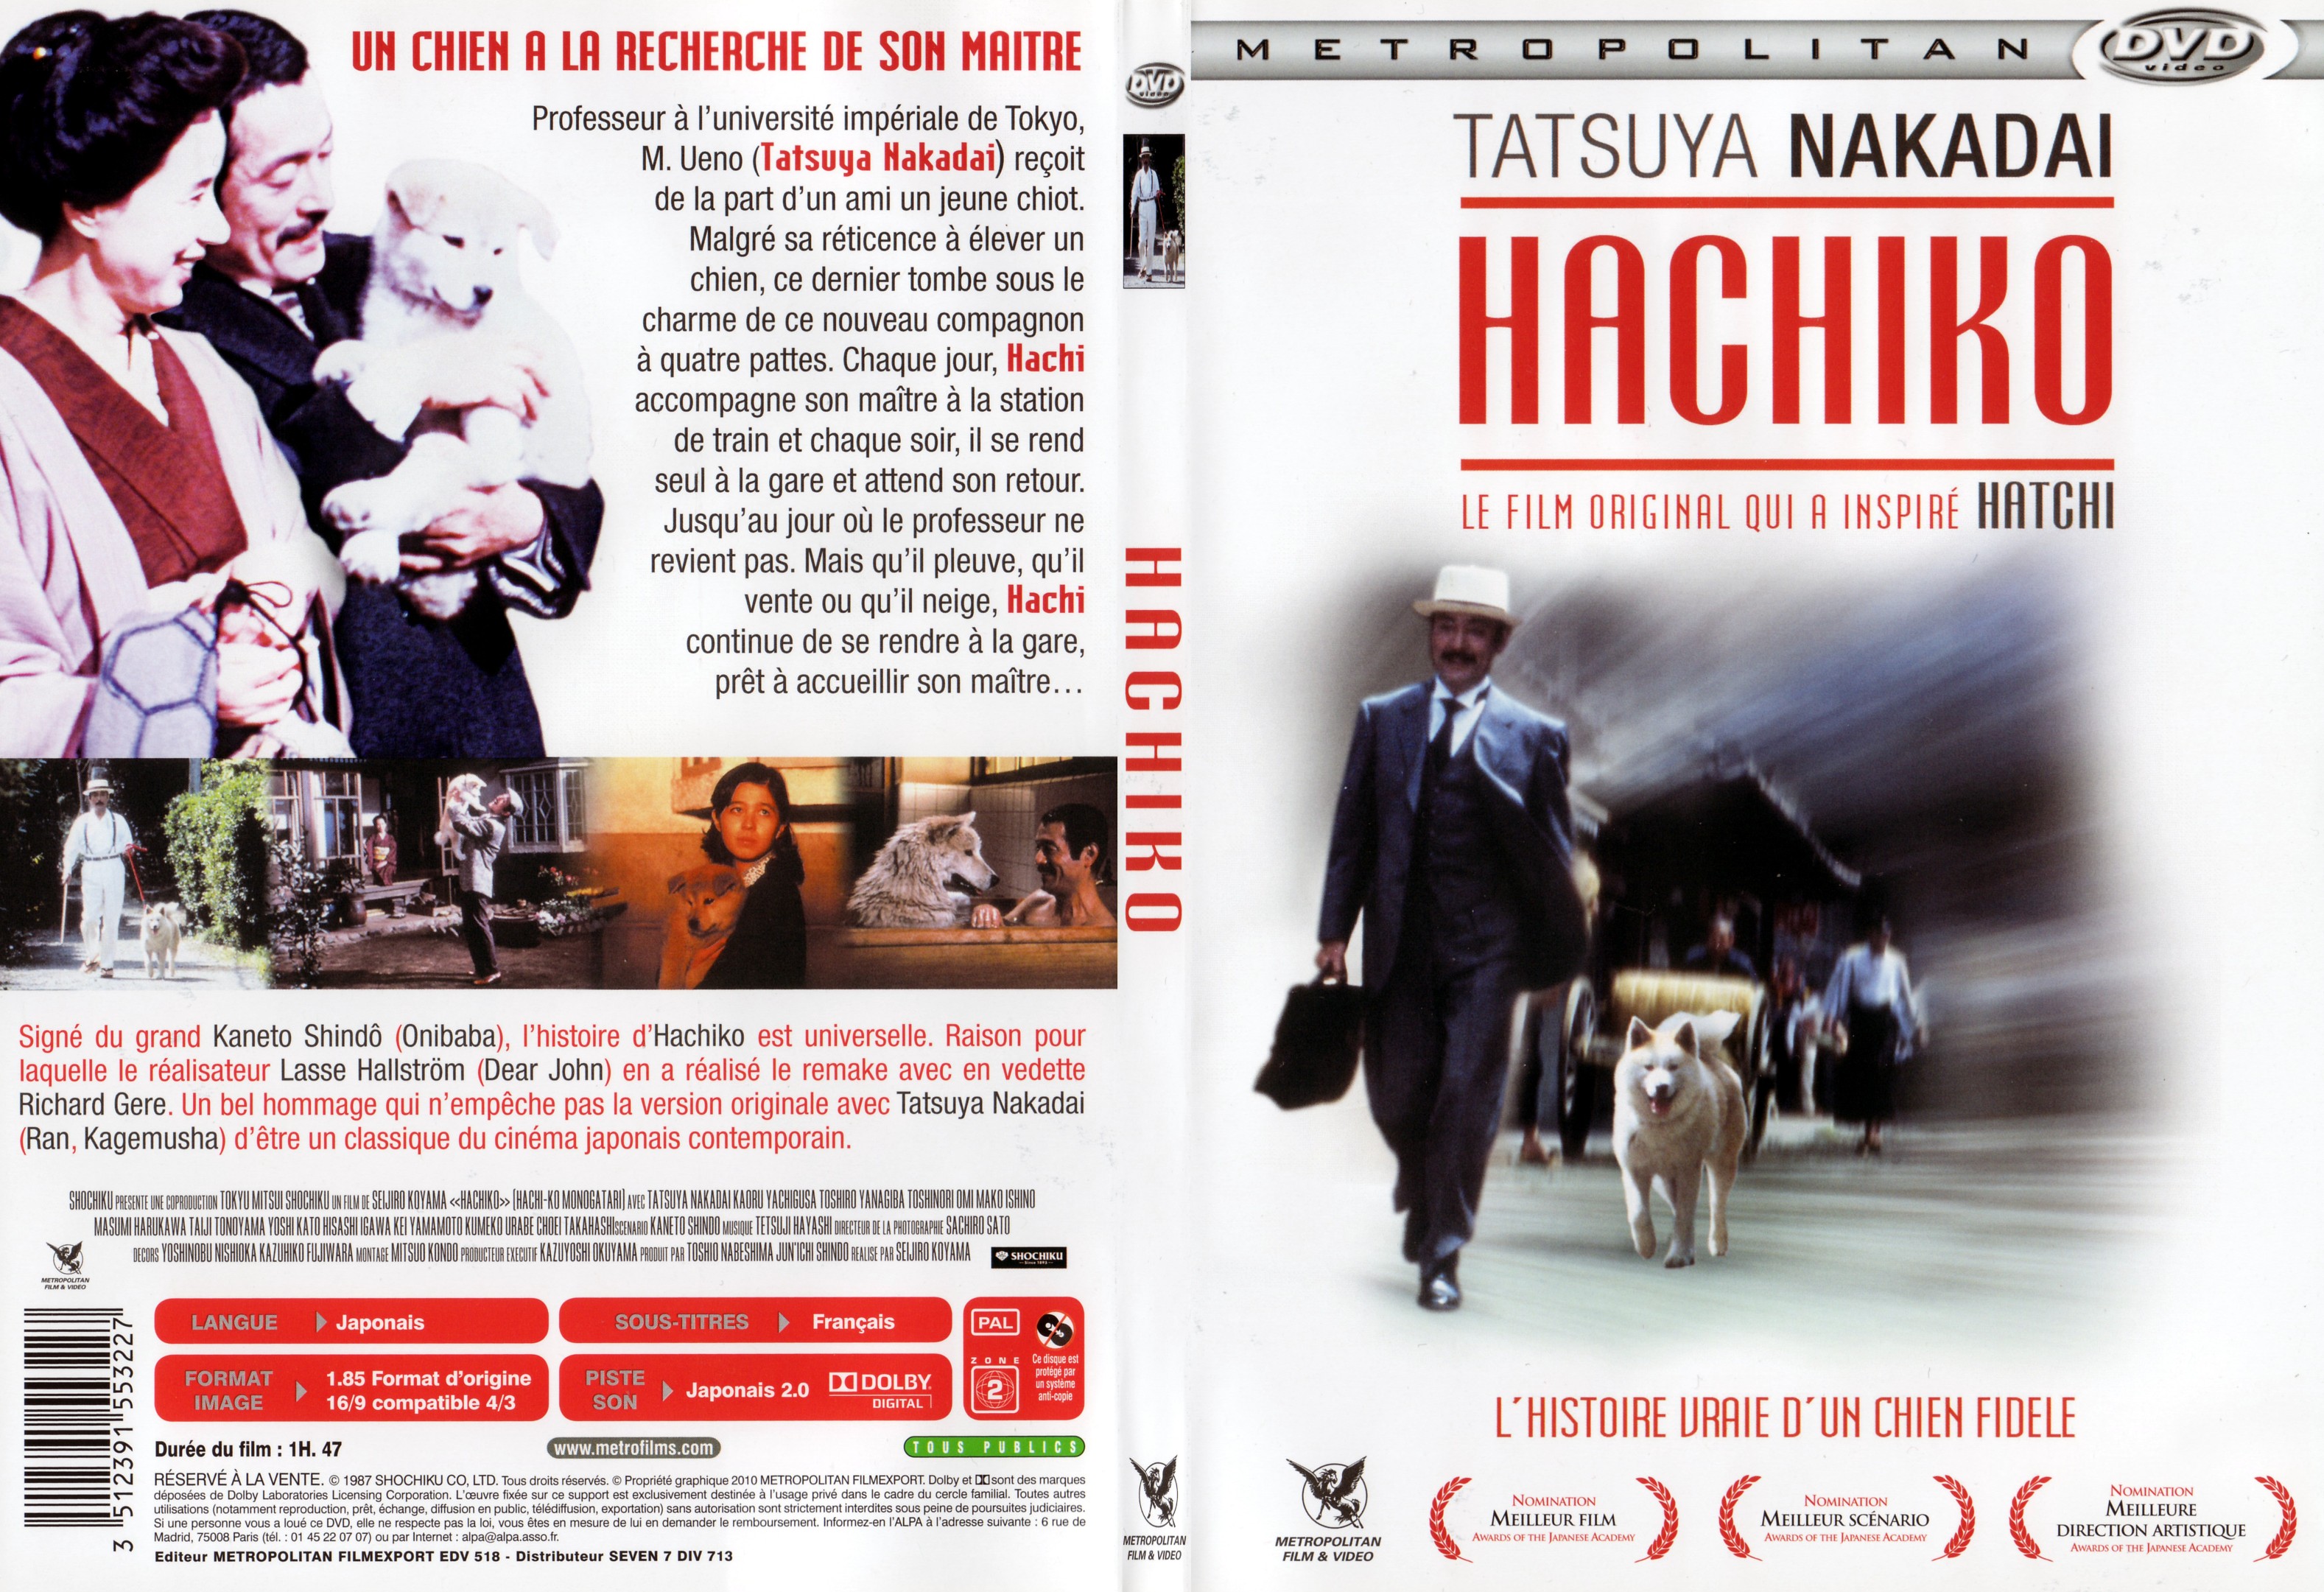 Jaquette DVD Hachiko - SLIM